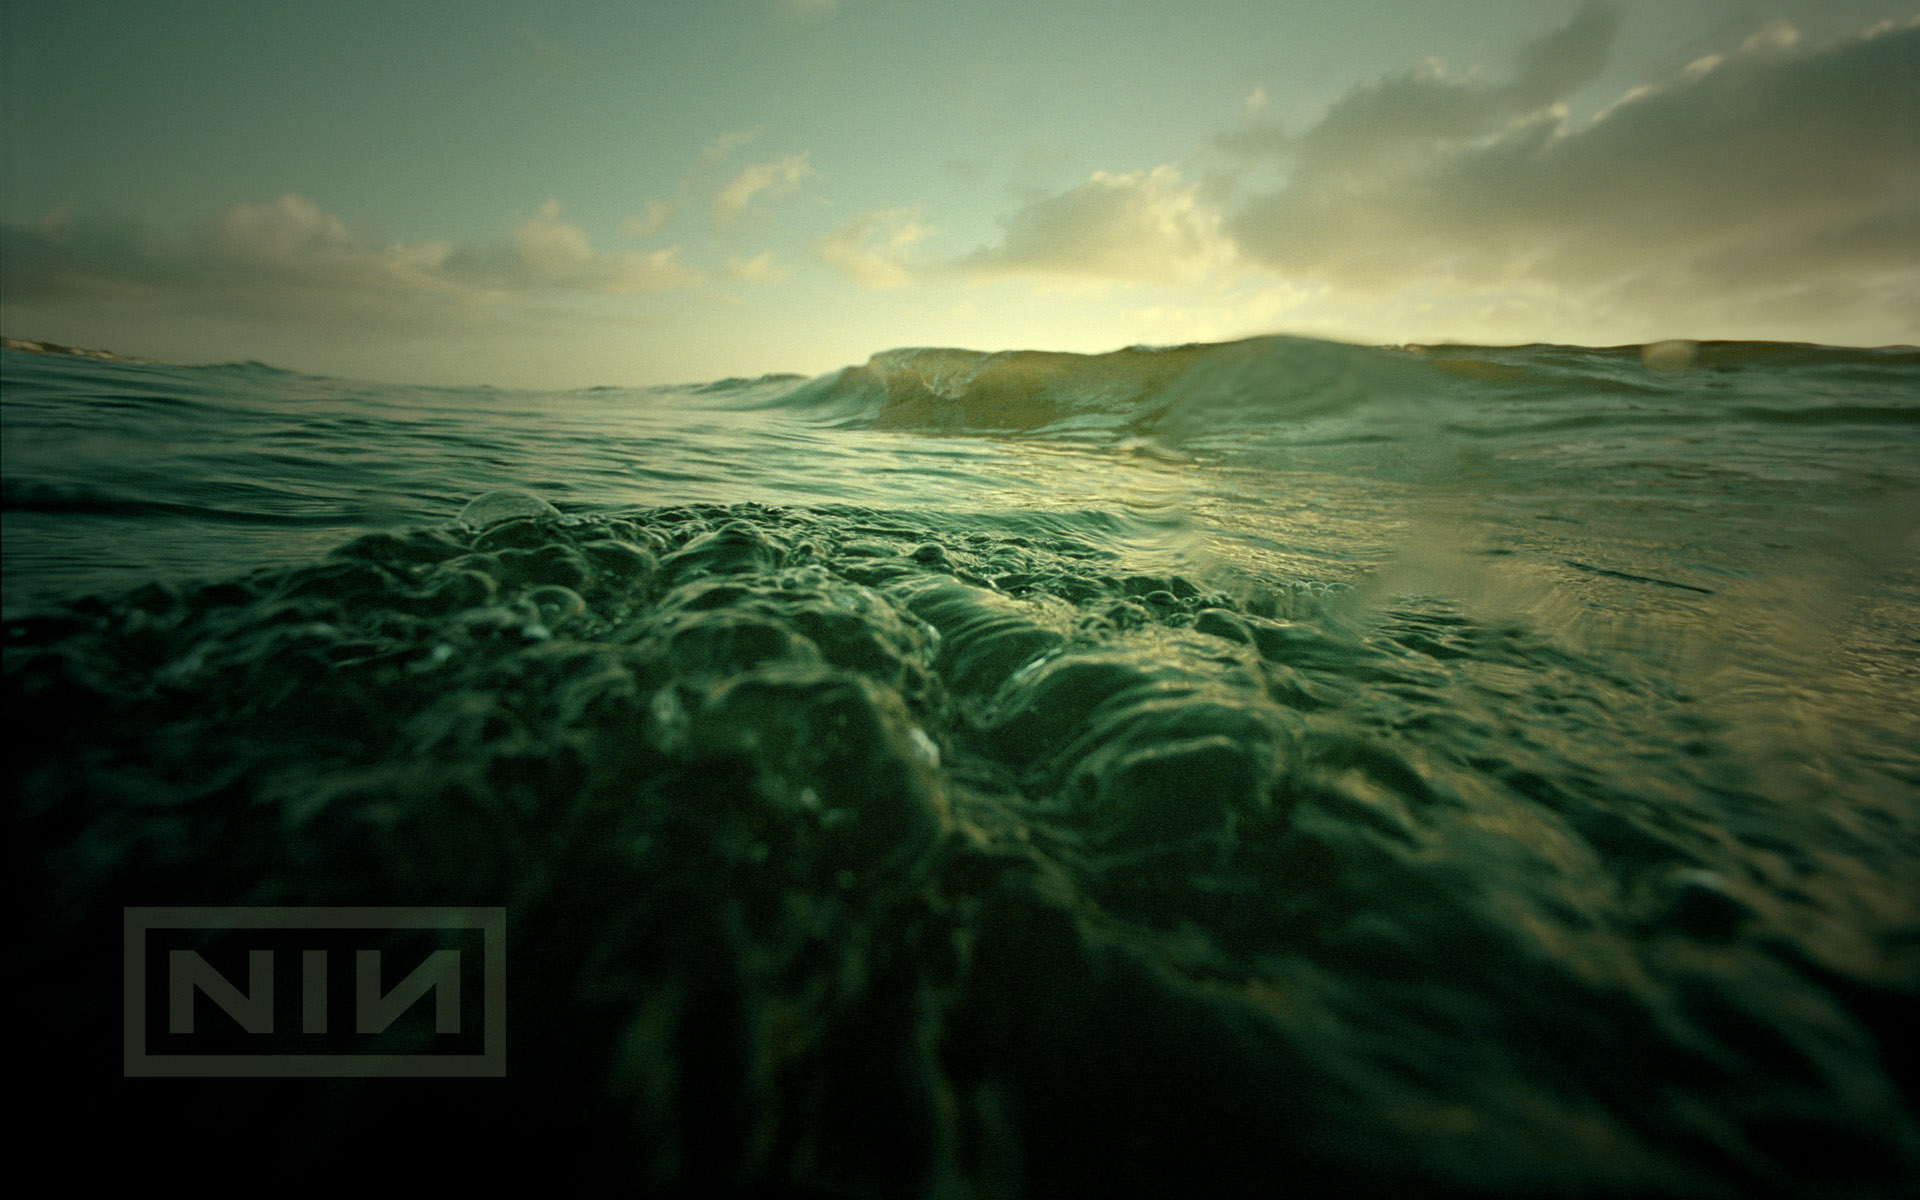 вода, океан, природа, минималистичный, Nine Inch Nails, музыка, волны, музыкальные группы, небо, море - обои на рабочий стол